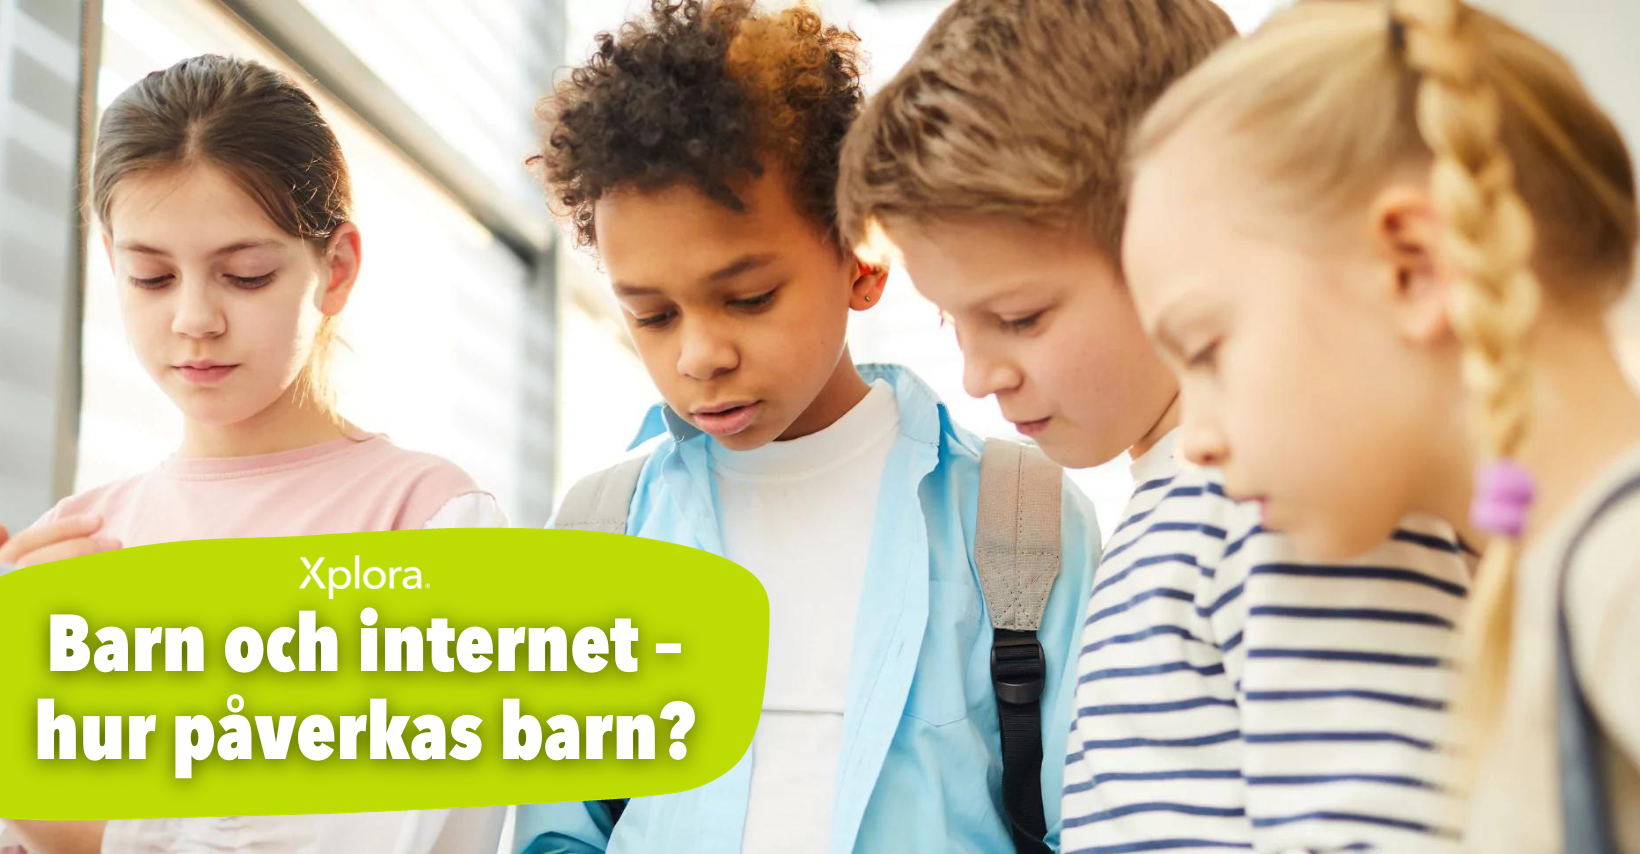 xplora - barn och internet - hur påverkas dem